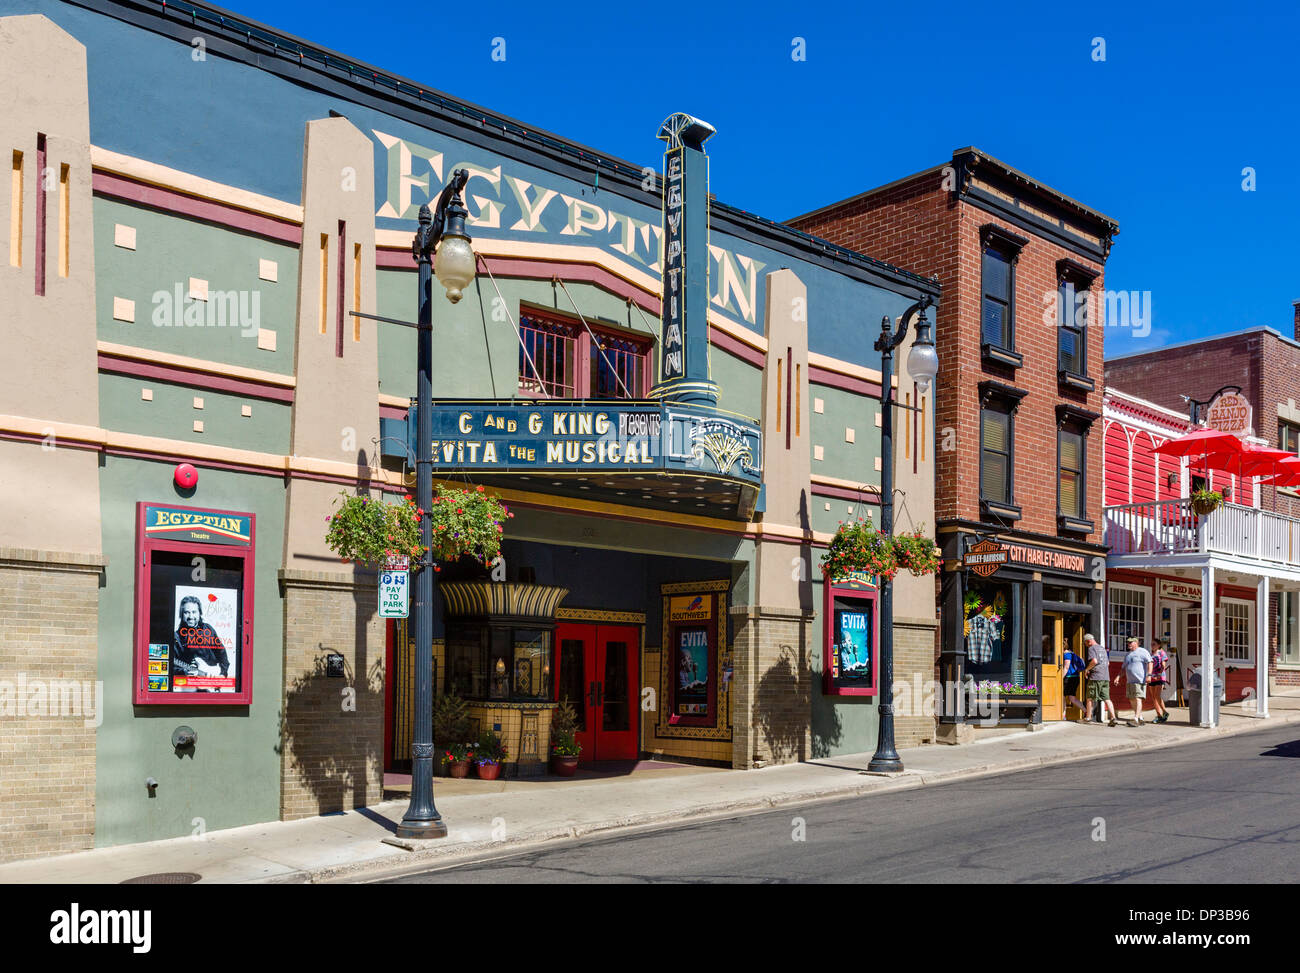 Teatro egiziano sulla strada principale nel centro di Park City, Utah, Stati Uniti d'America Foto Stock